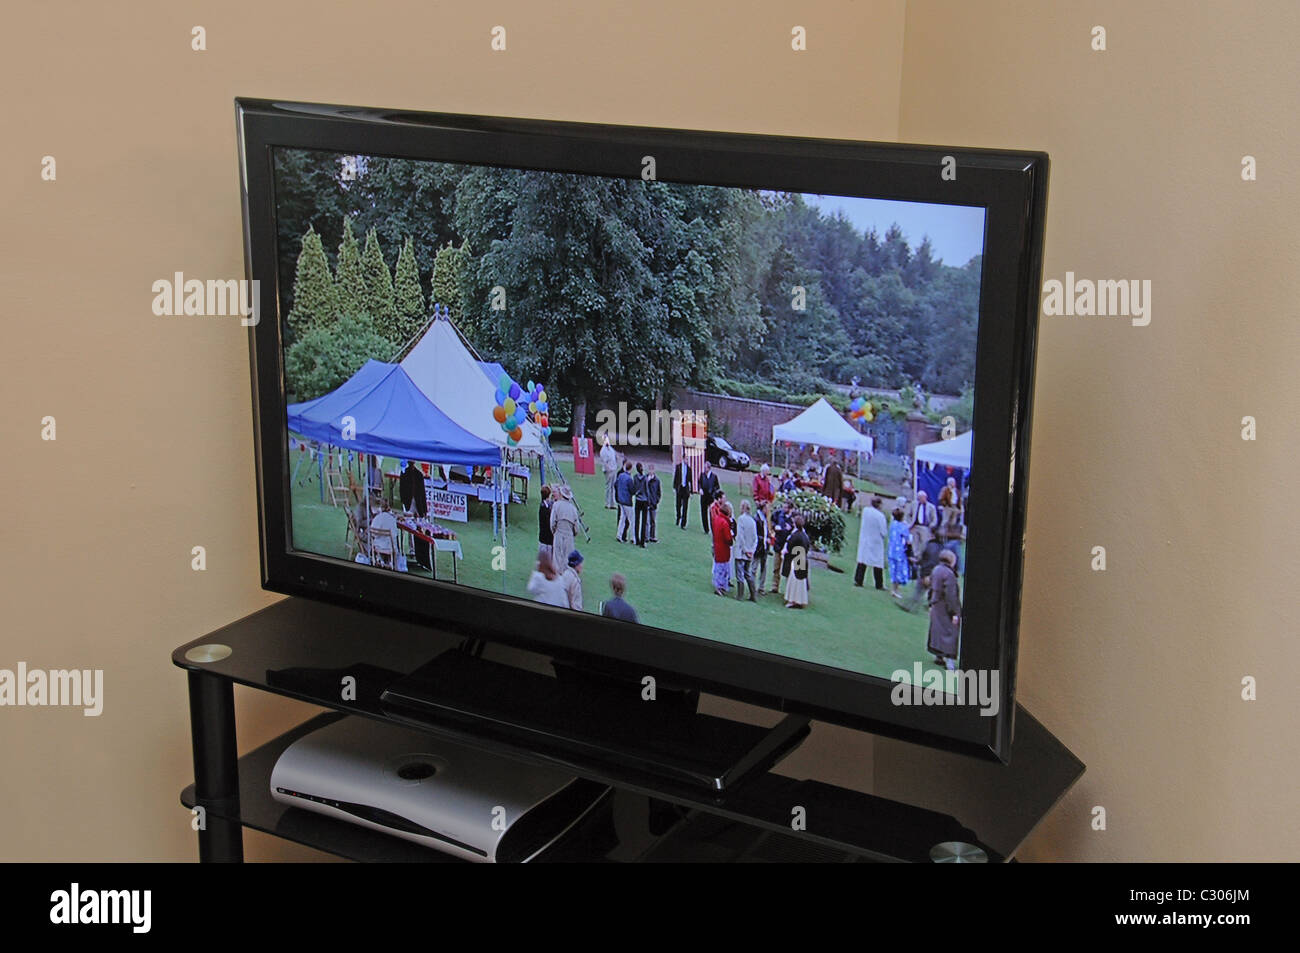 Televisor LCD panorámico de alta definición. Foto de stock